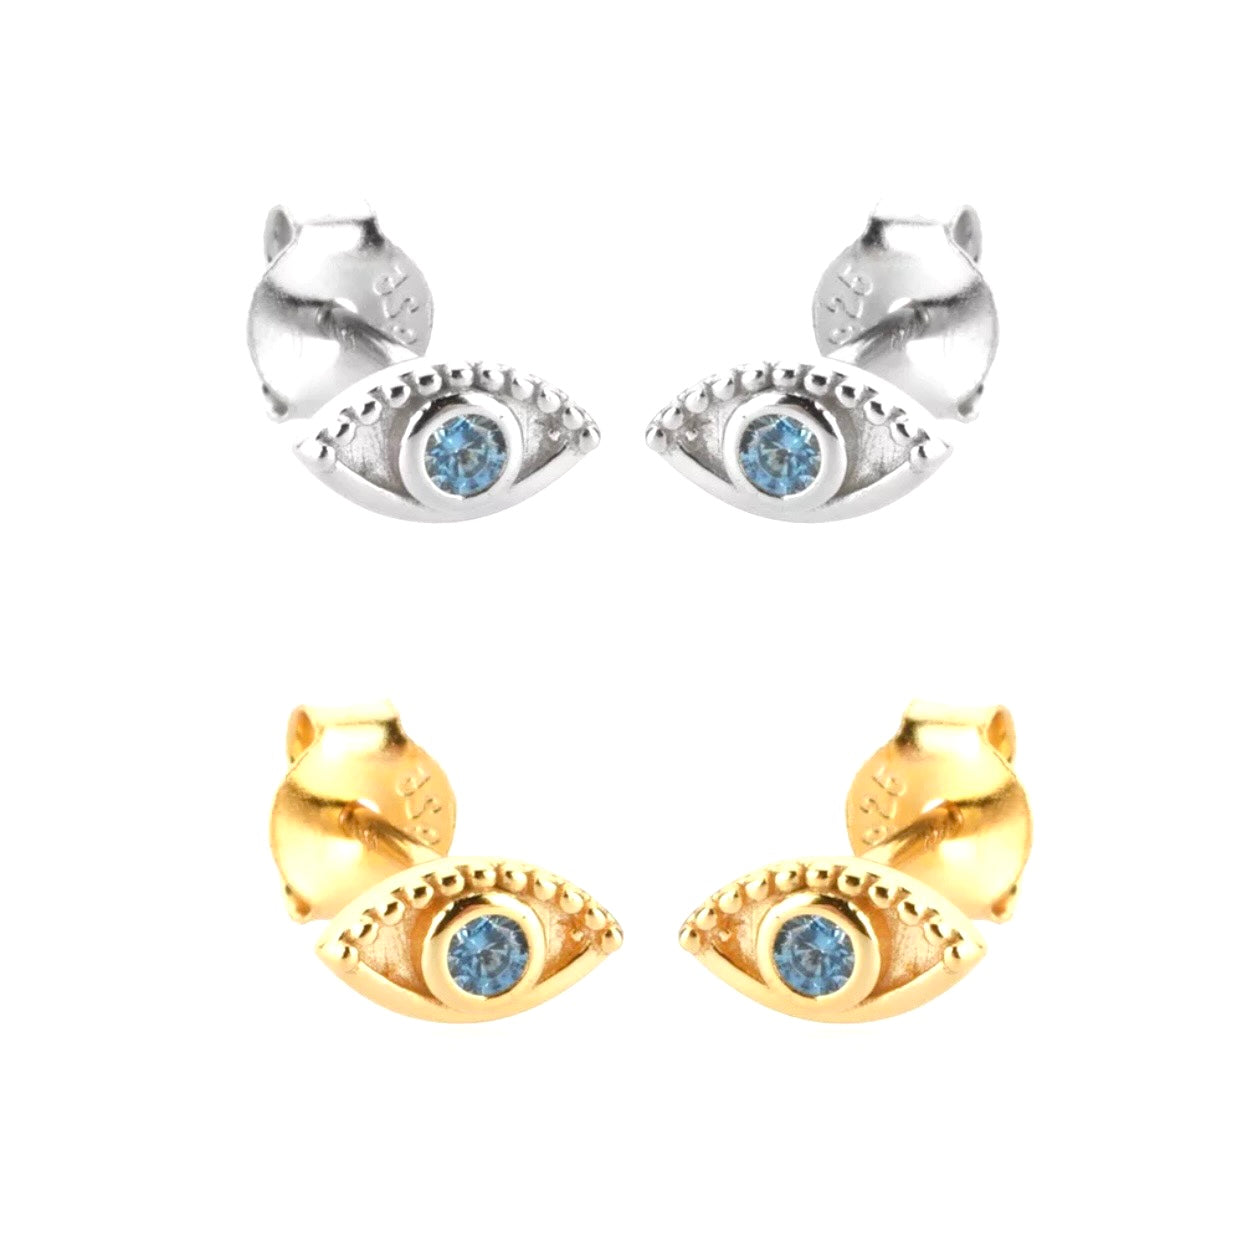 Crystal eye studs earrings